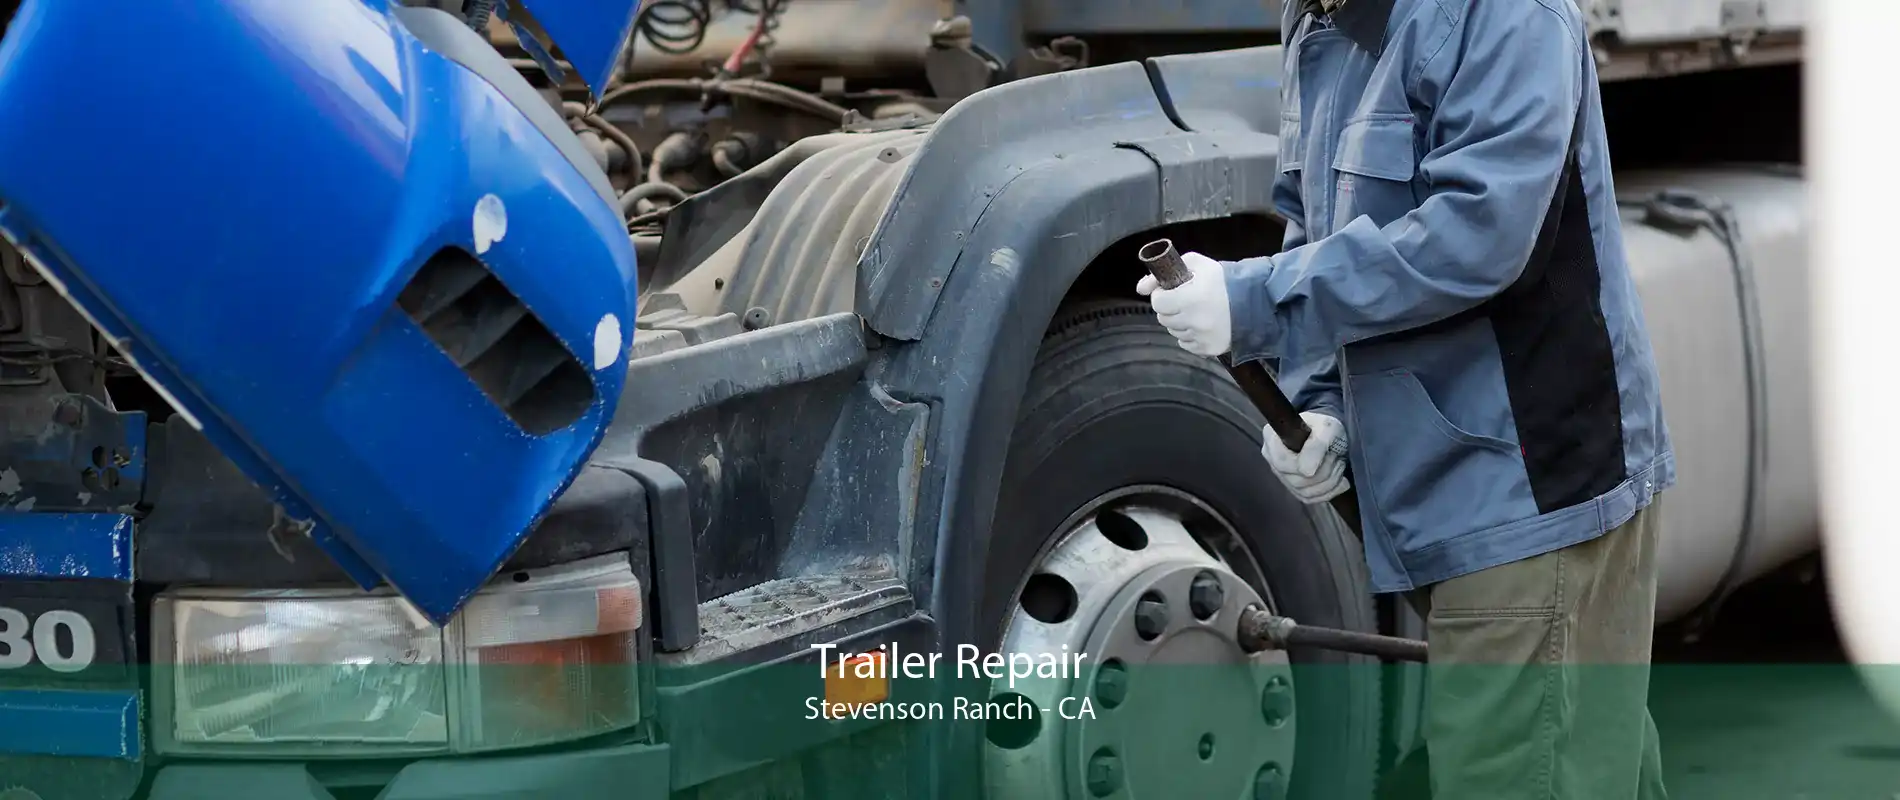 Trailer Repair Stevenson Ranch - CA